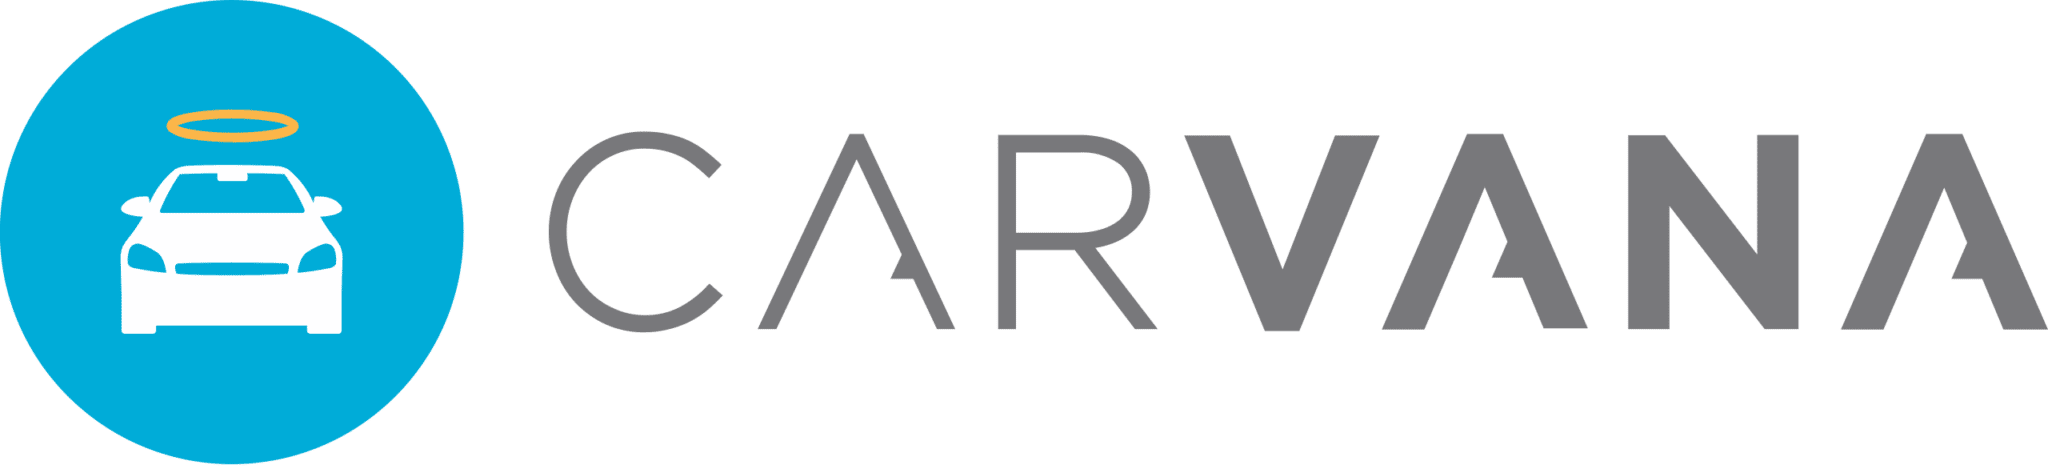 Carvana_logo